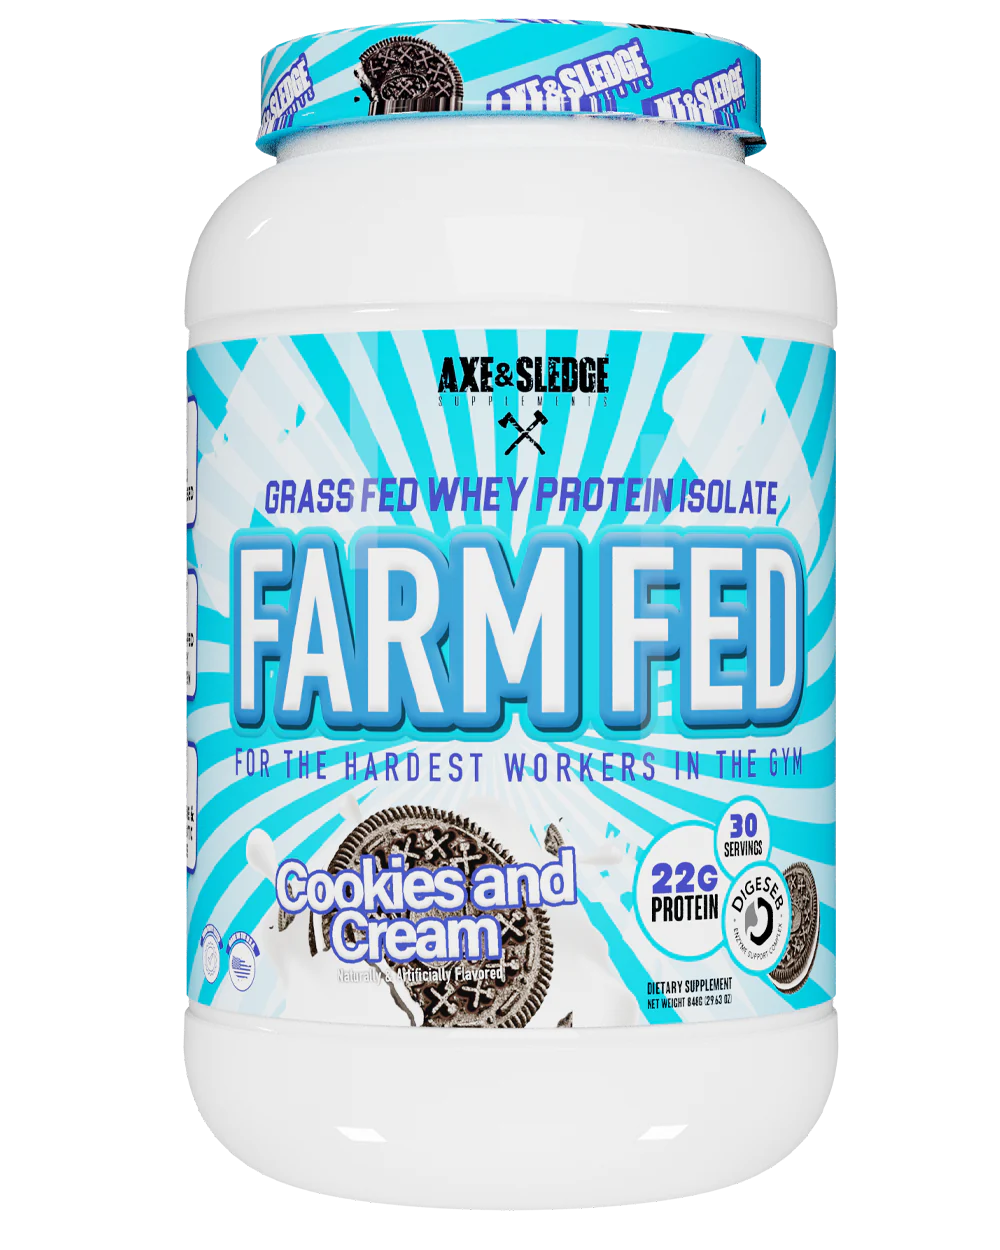 Farm Fed by Axe and Sledge